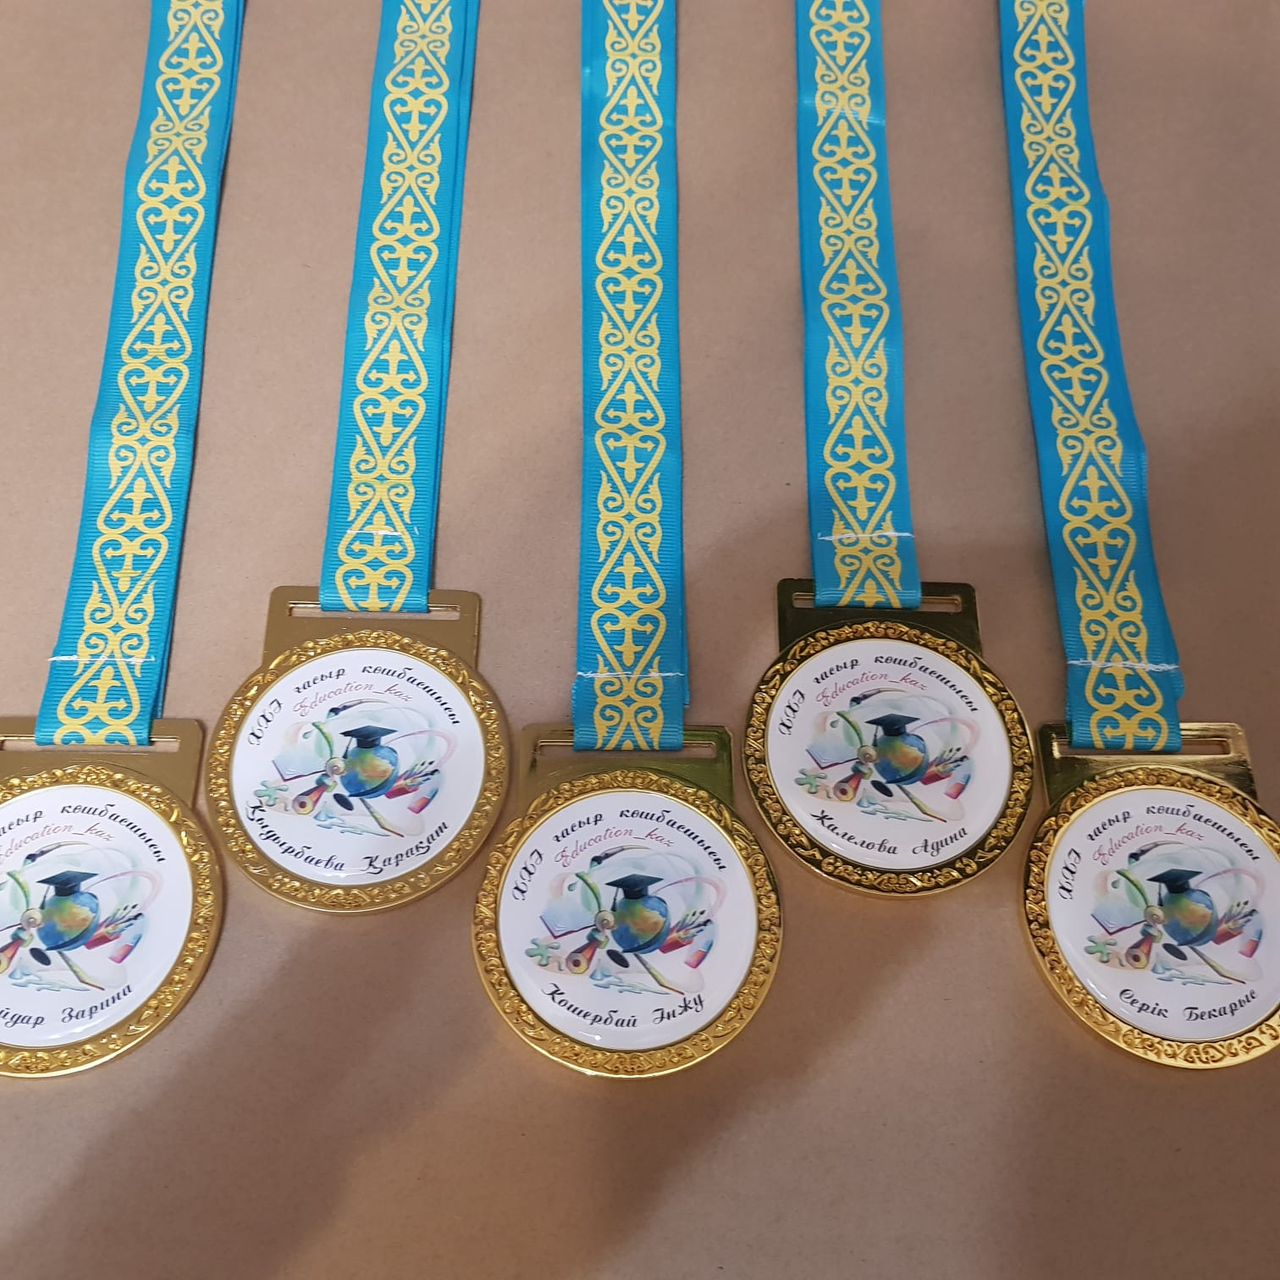 Изготовление значков и медалей на заказ по индивидуальному заказу, фото 1